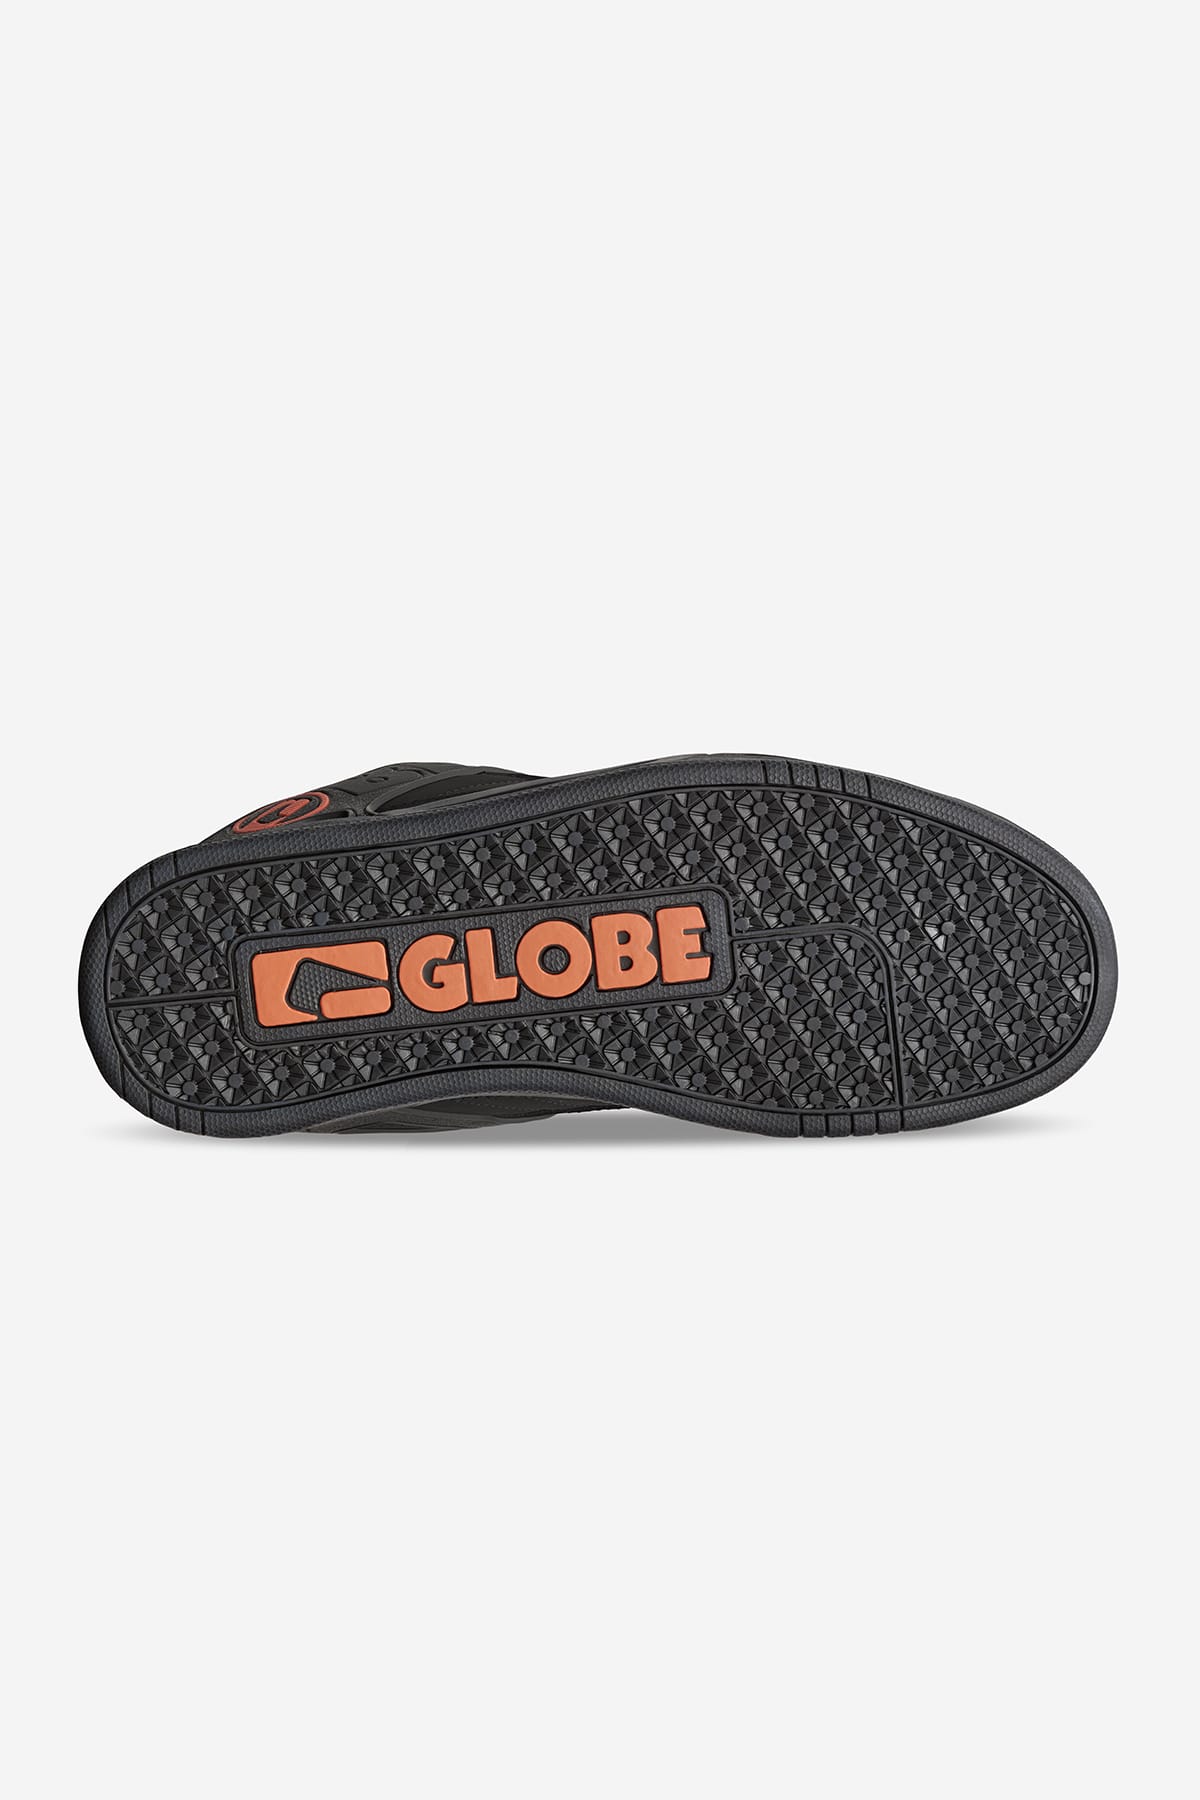 Globe - Tilt - Black/Black/Bronzo - skateboard Scarpe